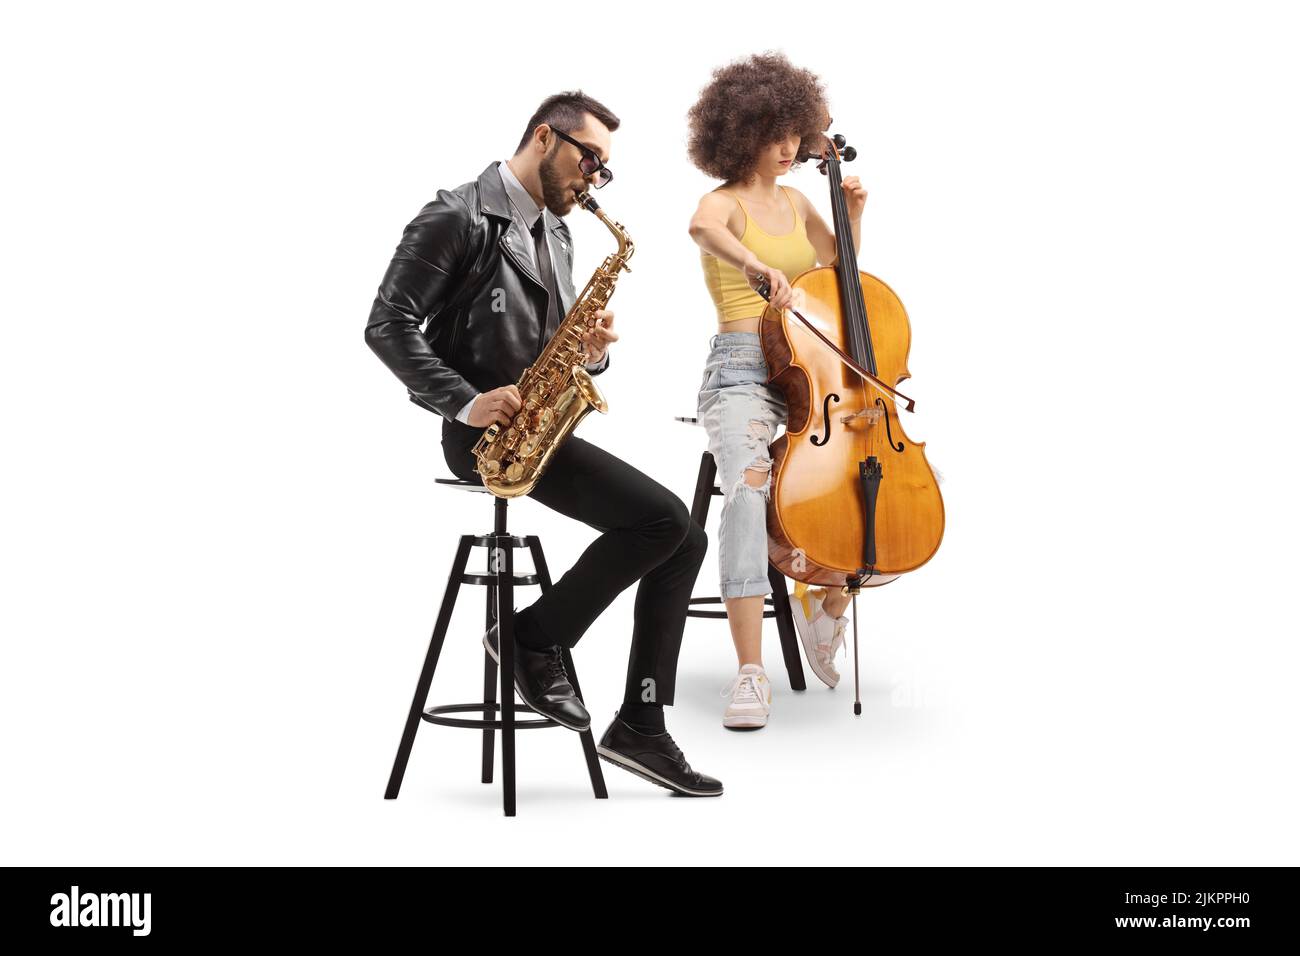 Hombre sentado y tocando un saxofón y una mujer tocando un violonchelo aislado sobre fondo blanco Foto de stock